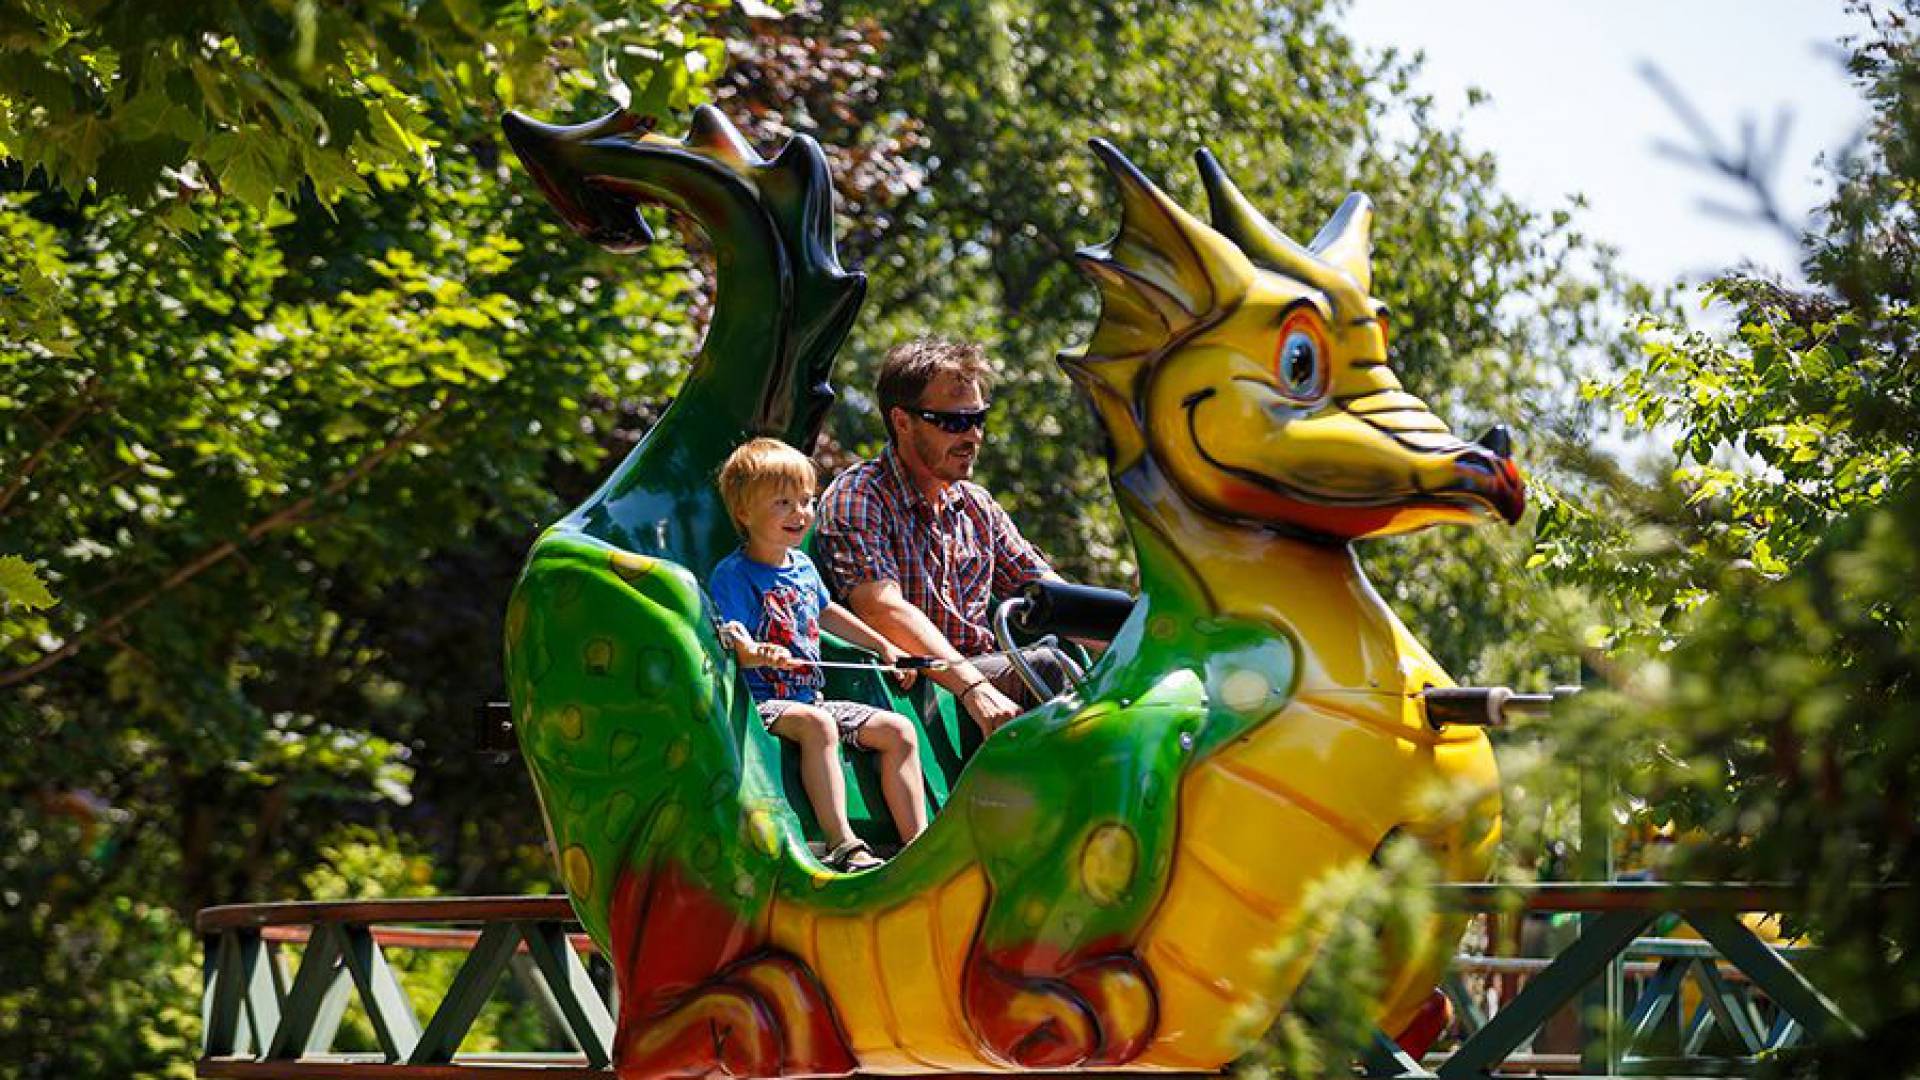 Märchenpark Bayern - Vater mit Sohn in einer Achterbahn